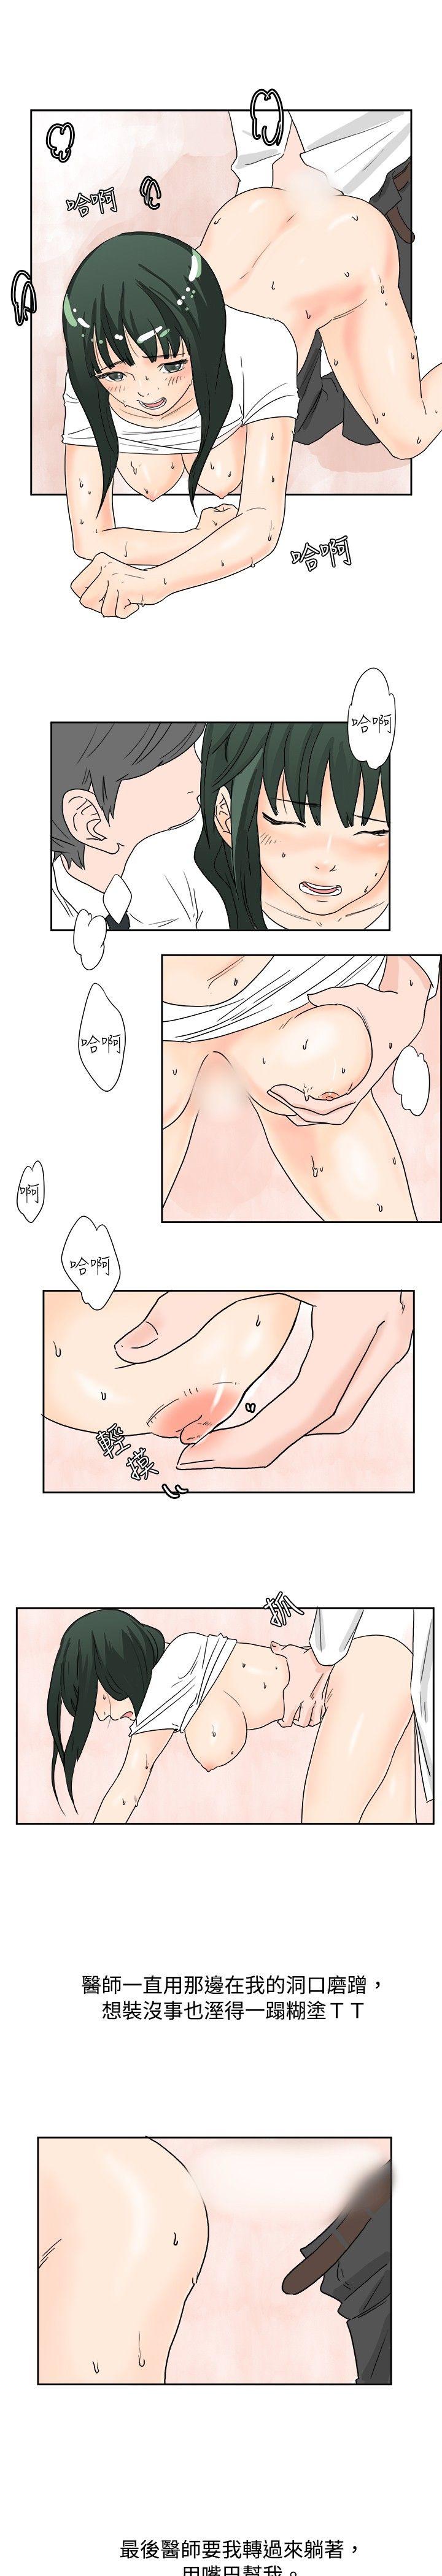 韩国污漫画 秘密Story 去针灸的色瞇瞇事件(下) 13